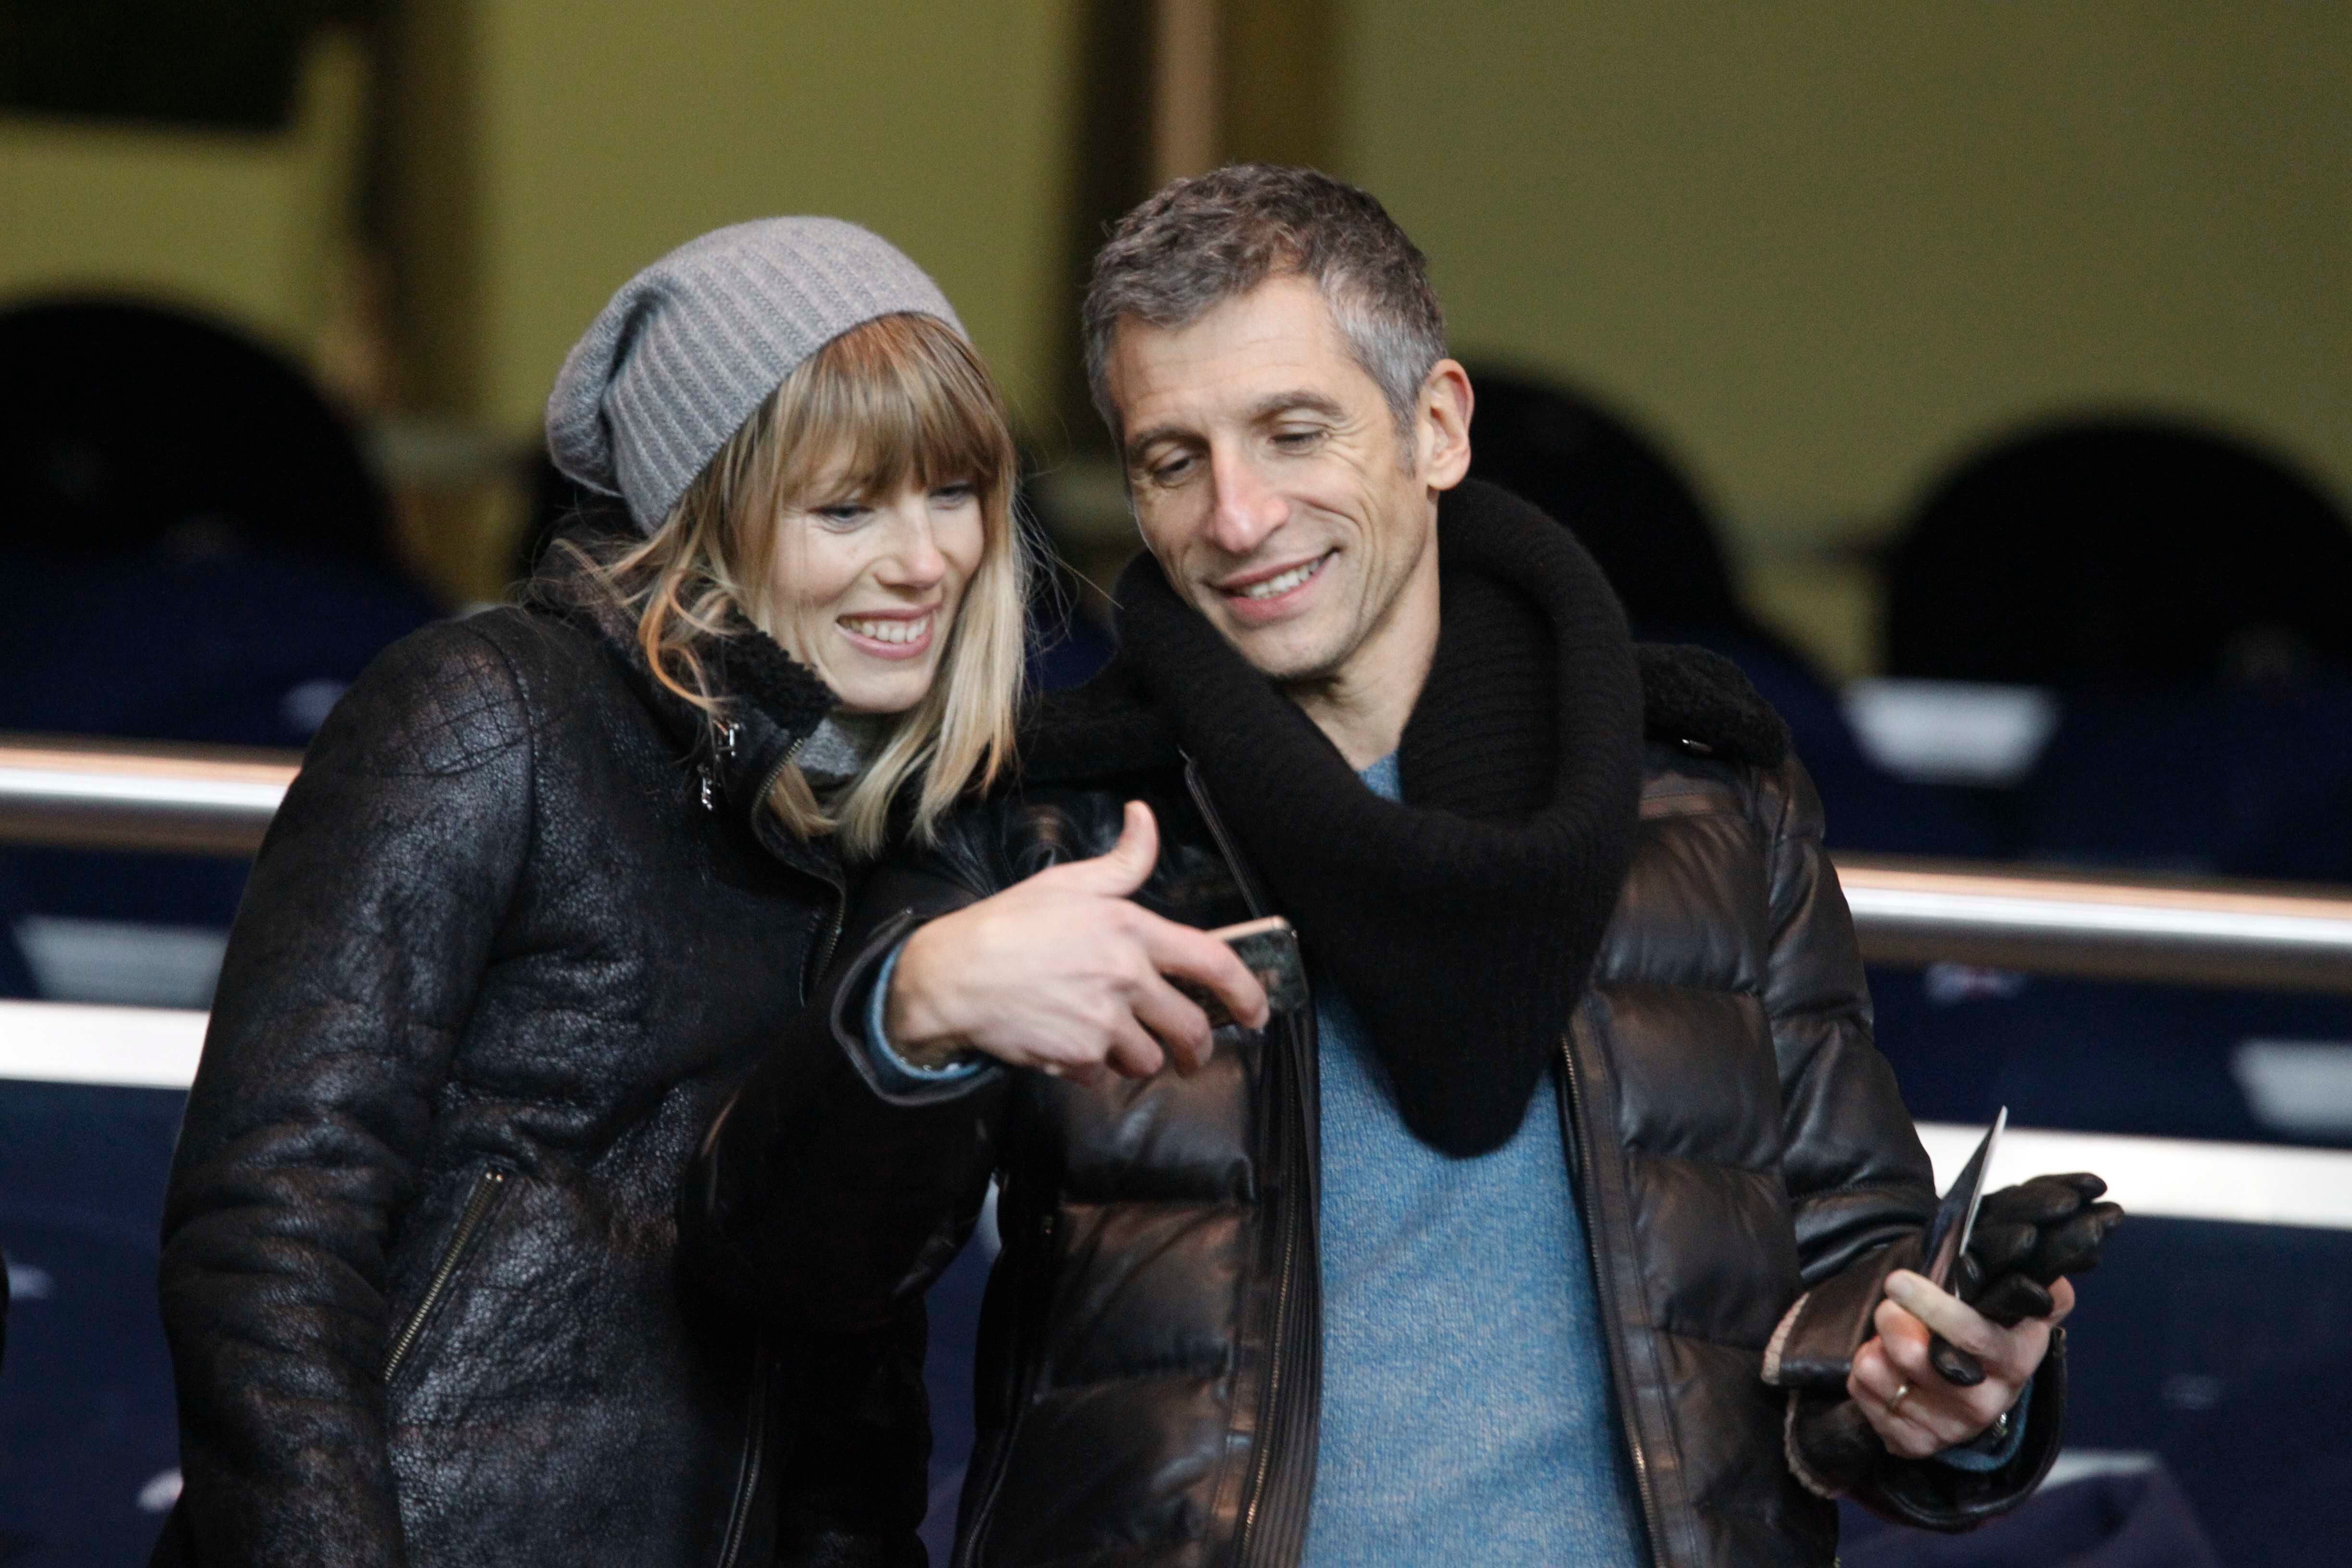  Melanie Page et son mari Nagui au Parc des Princes le 27 février 2013 à Paris, France. | Photo : Getty Images